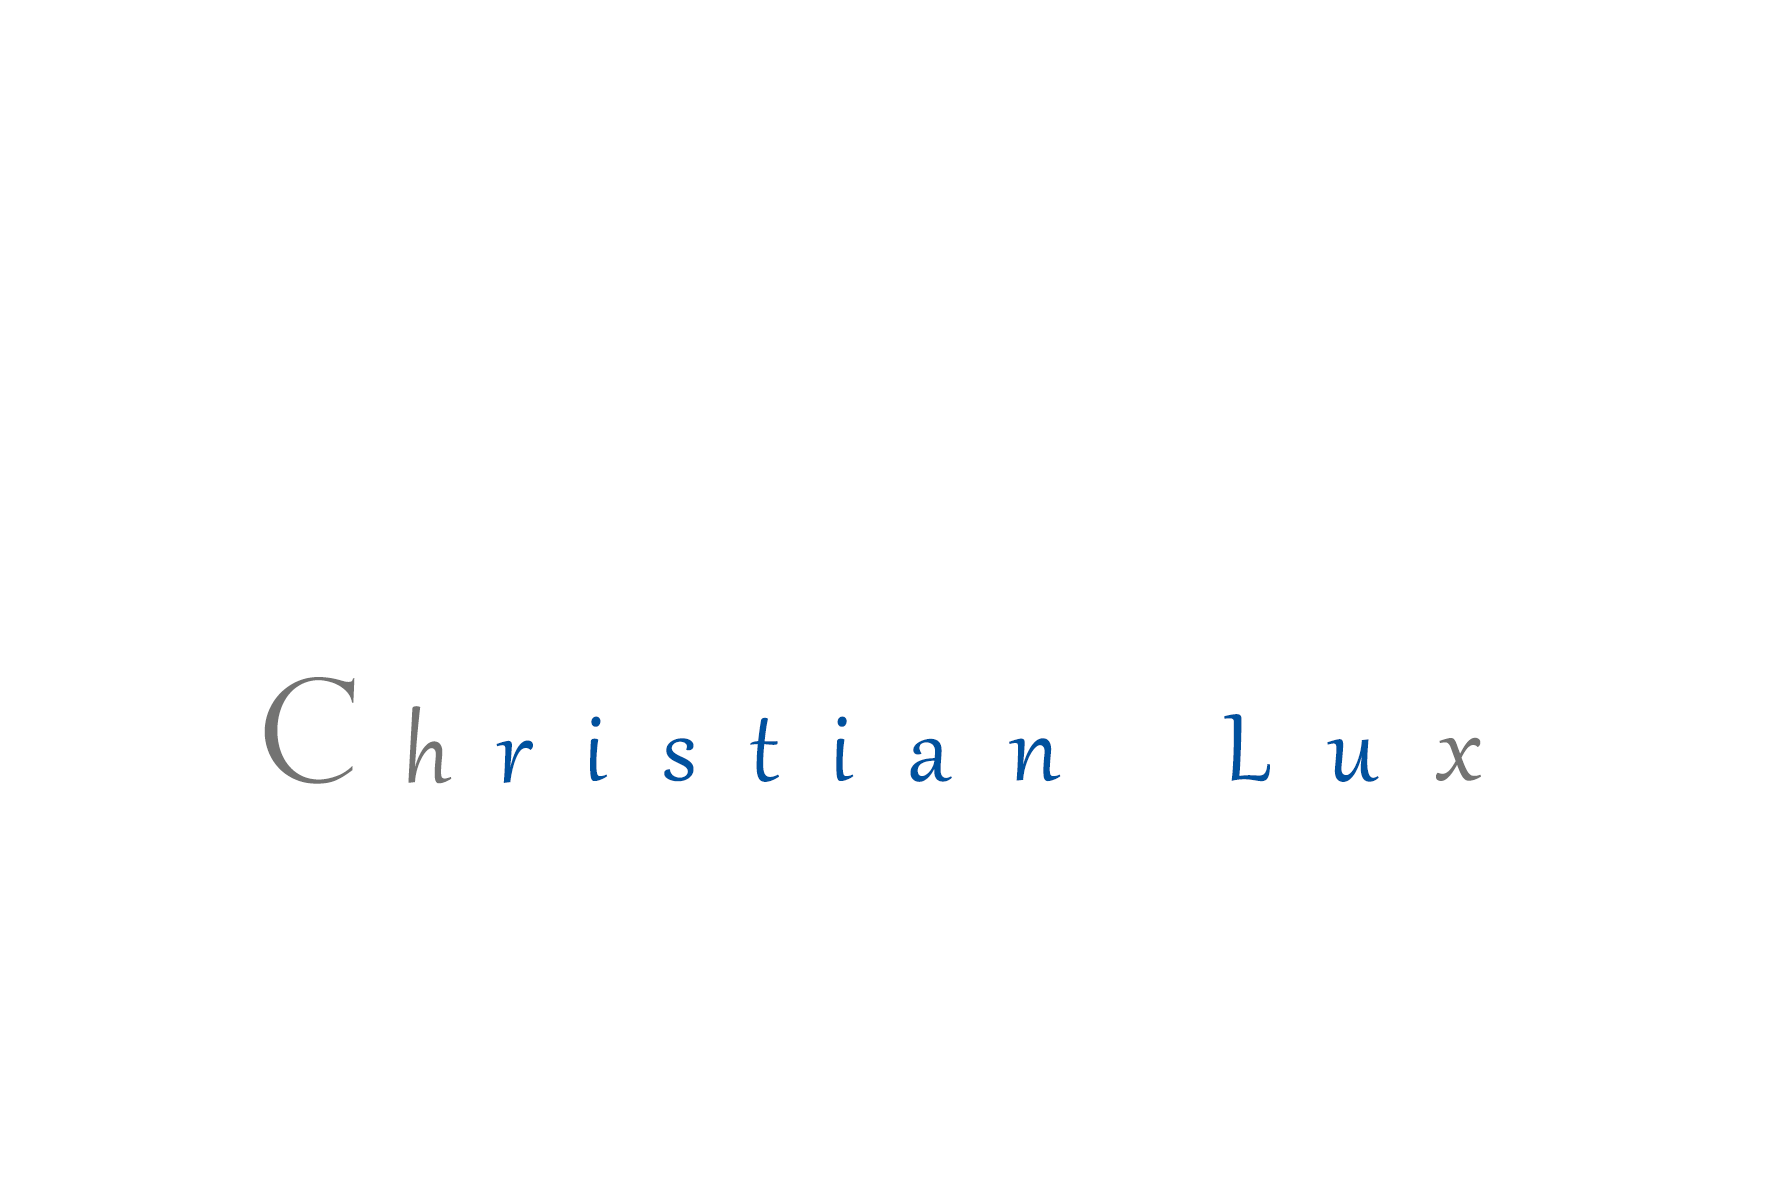 Woher stammt eigentlich das Logo und der Name "ch9x"?